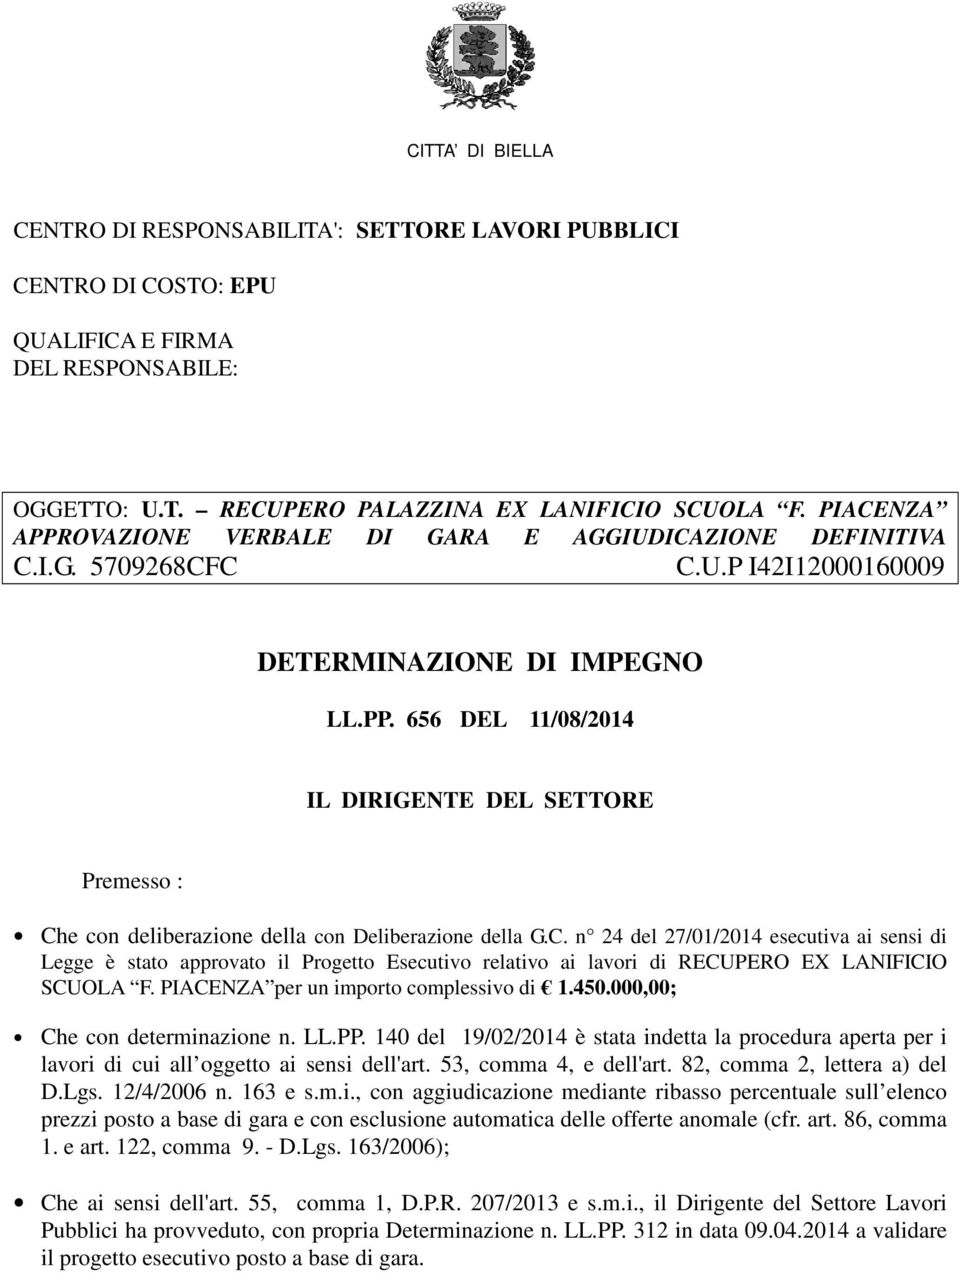 C. n 24 del 27/01/2014 esecutiva ai sensi di Legge è stato approvato il Progetto Esecutivo relativo ai lavori di RECUPERO EX LANIFICIO SCUOLA F. PIACENZA per un importo complessivo di 1.450.